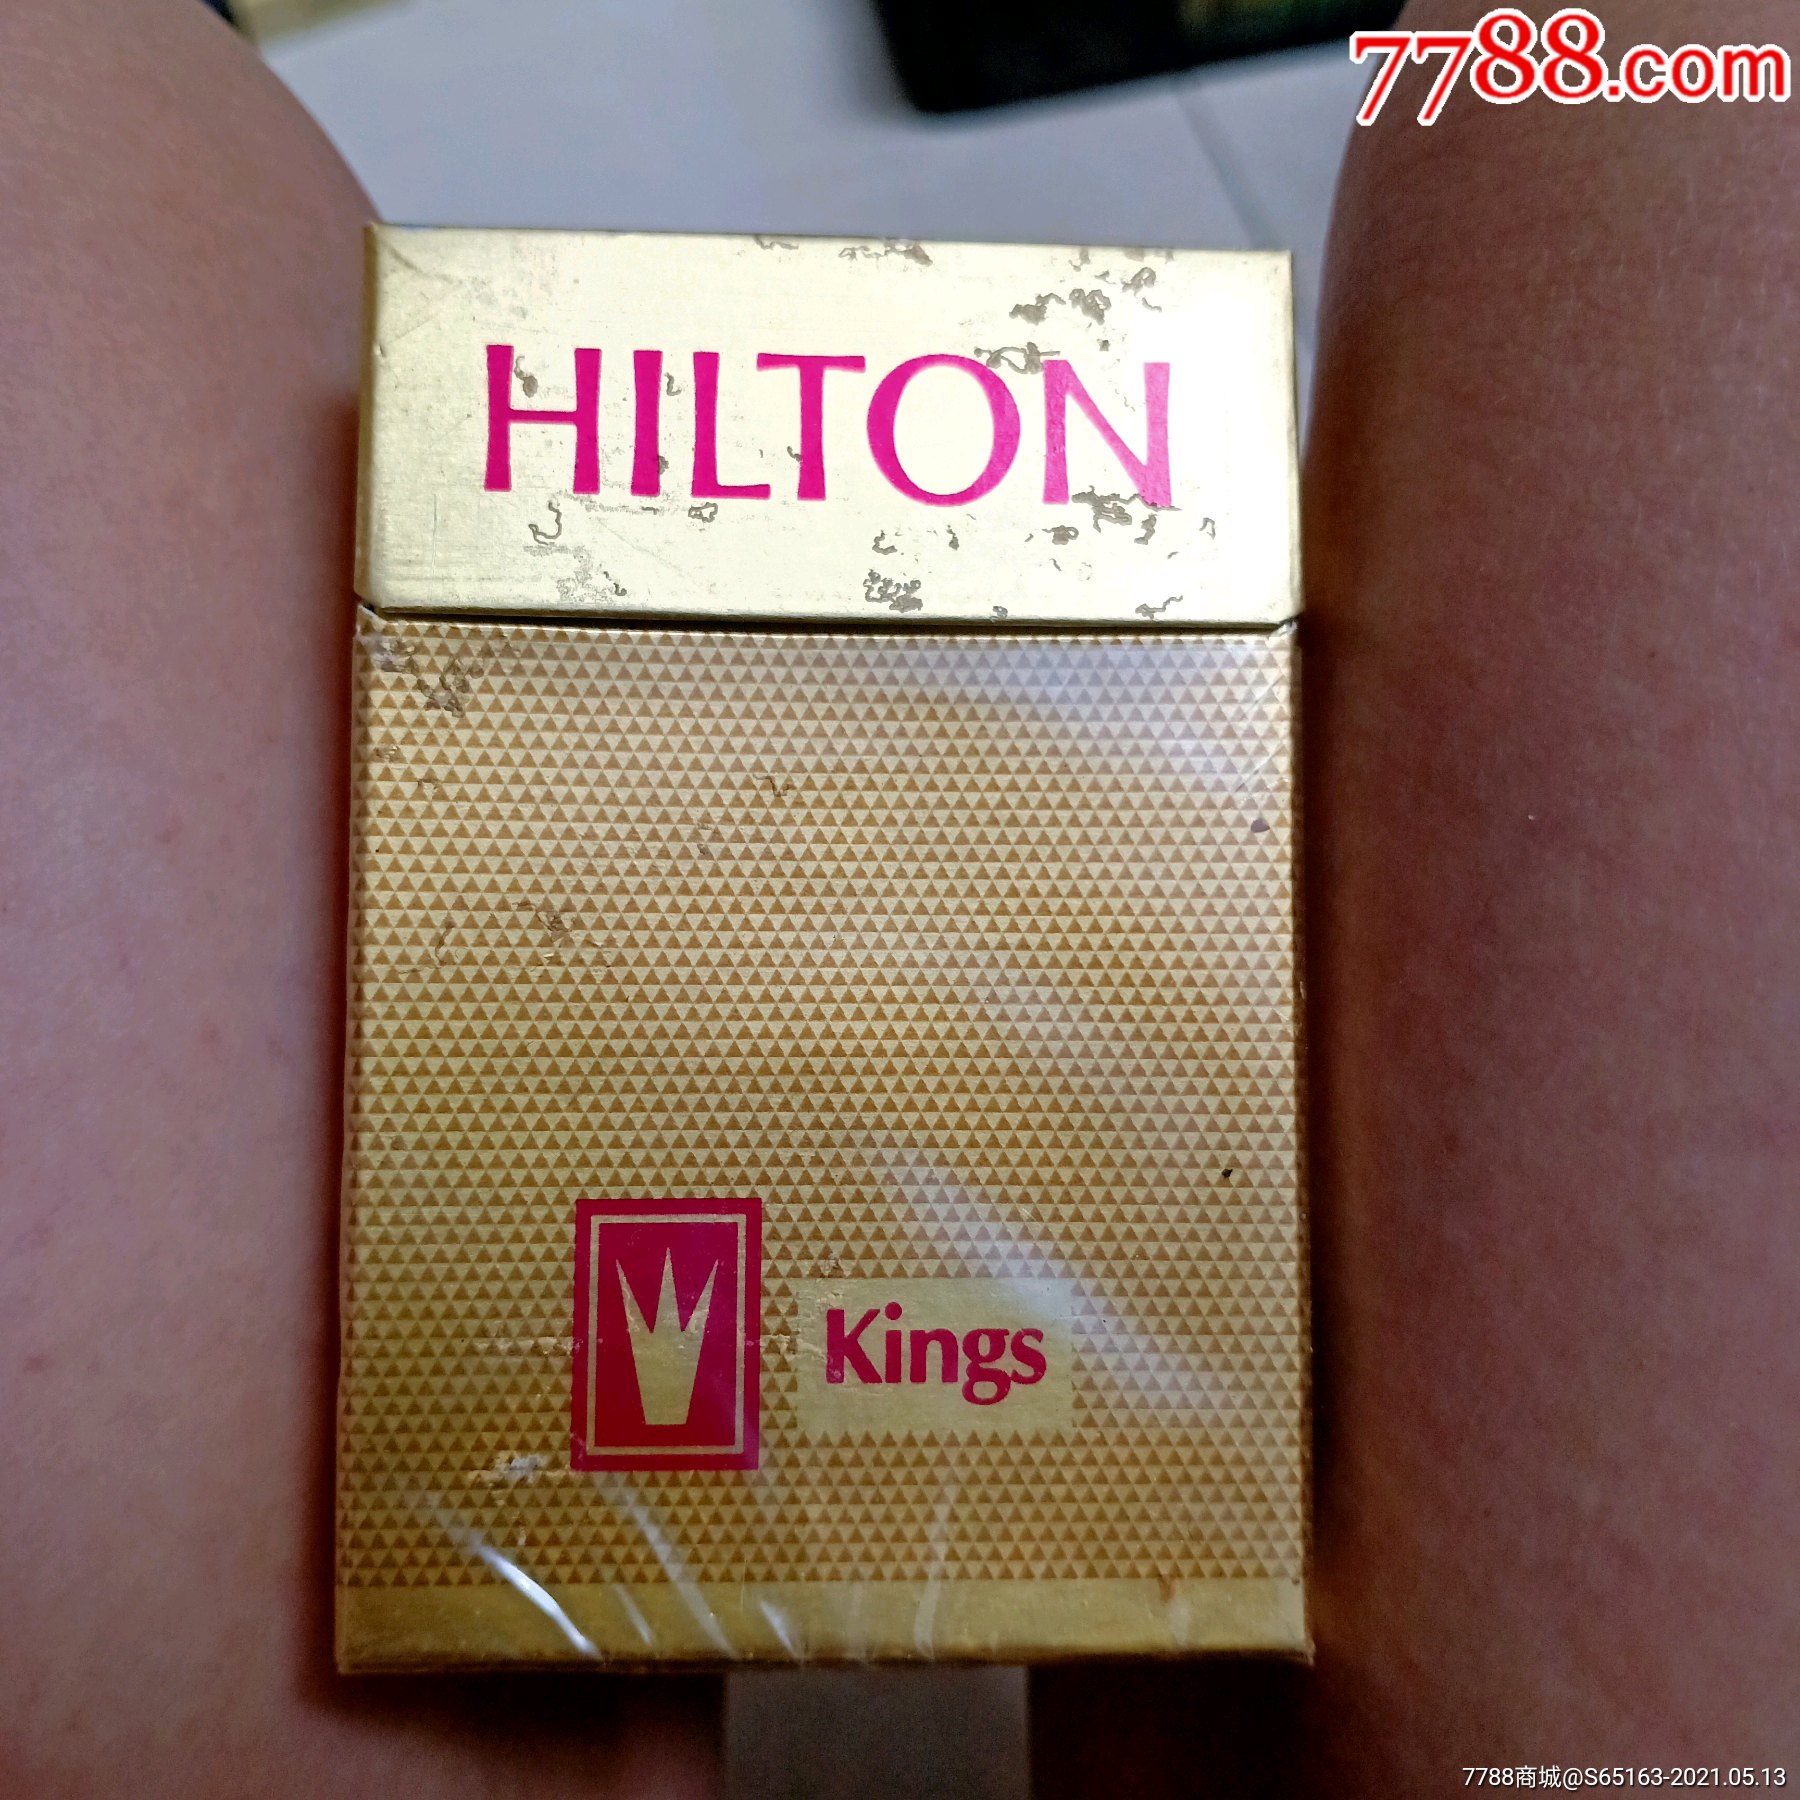 希尔顿香烟照片图片